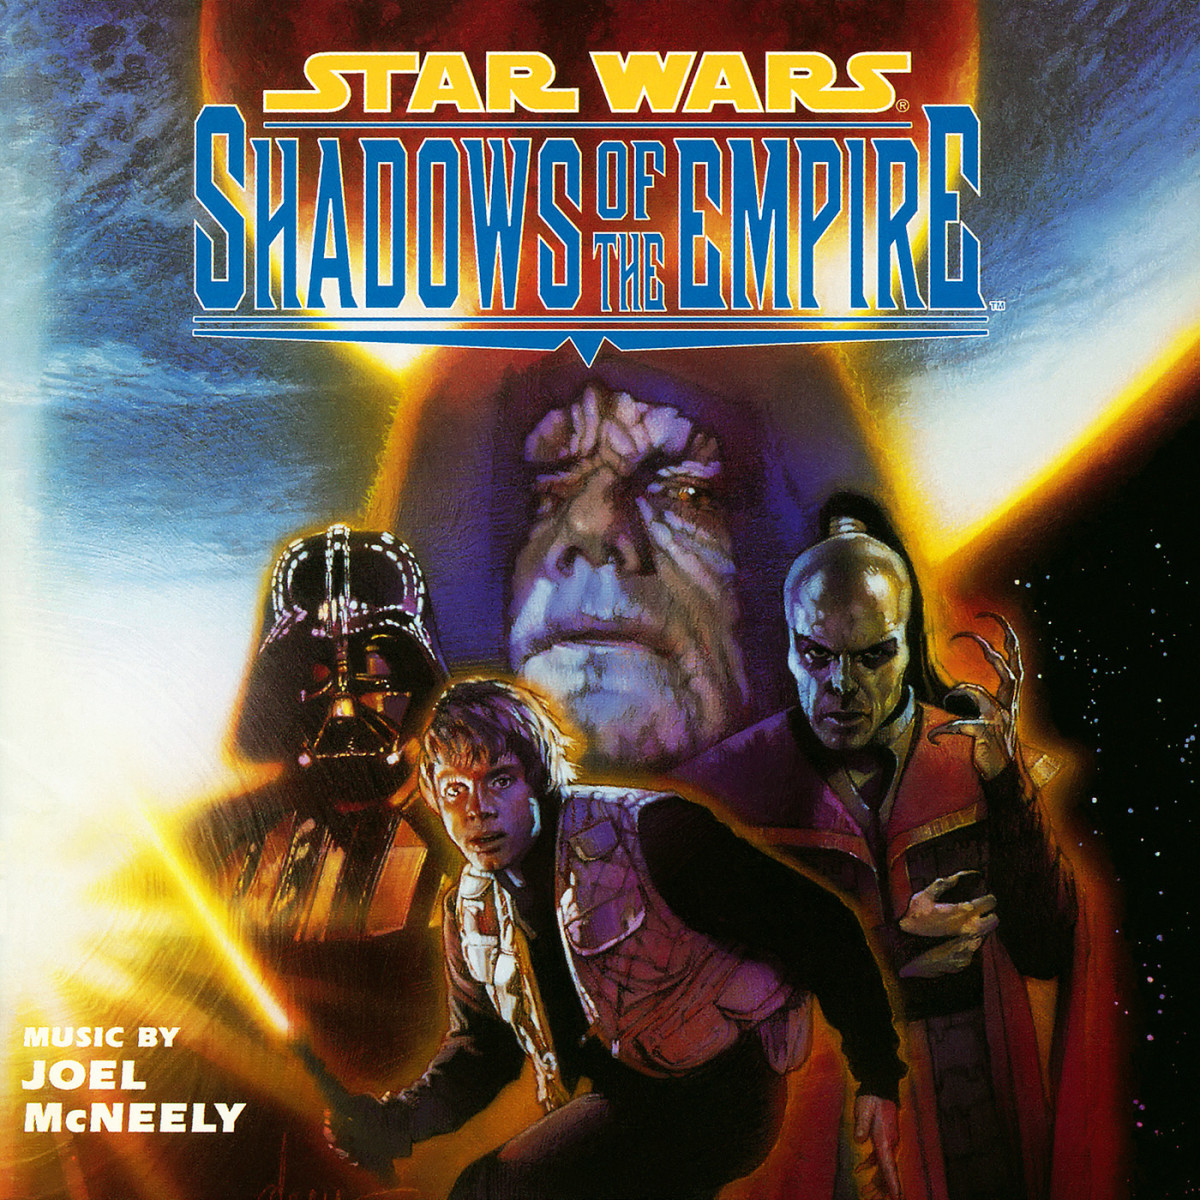 star-wars-shadows-of-the-empire-novel-review-hobbylark